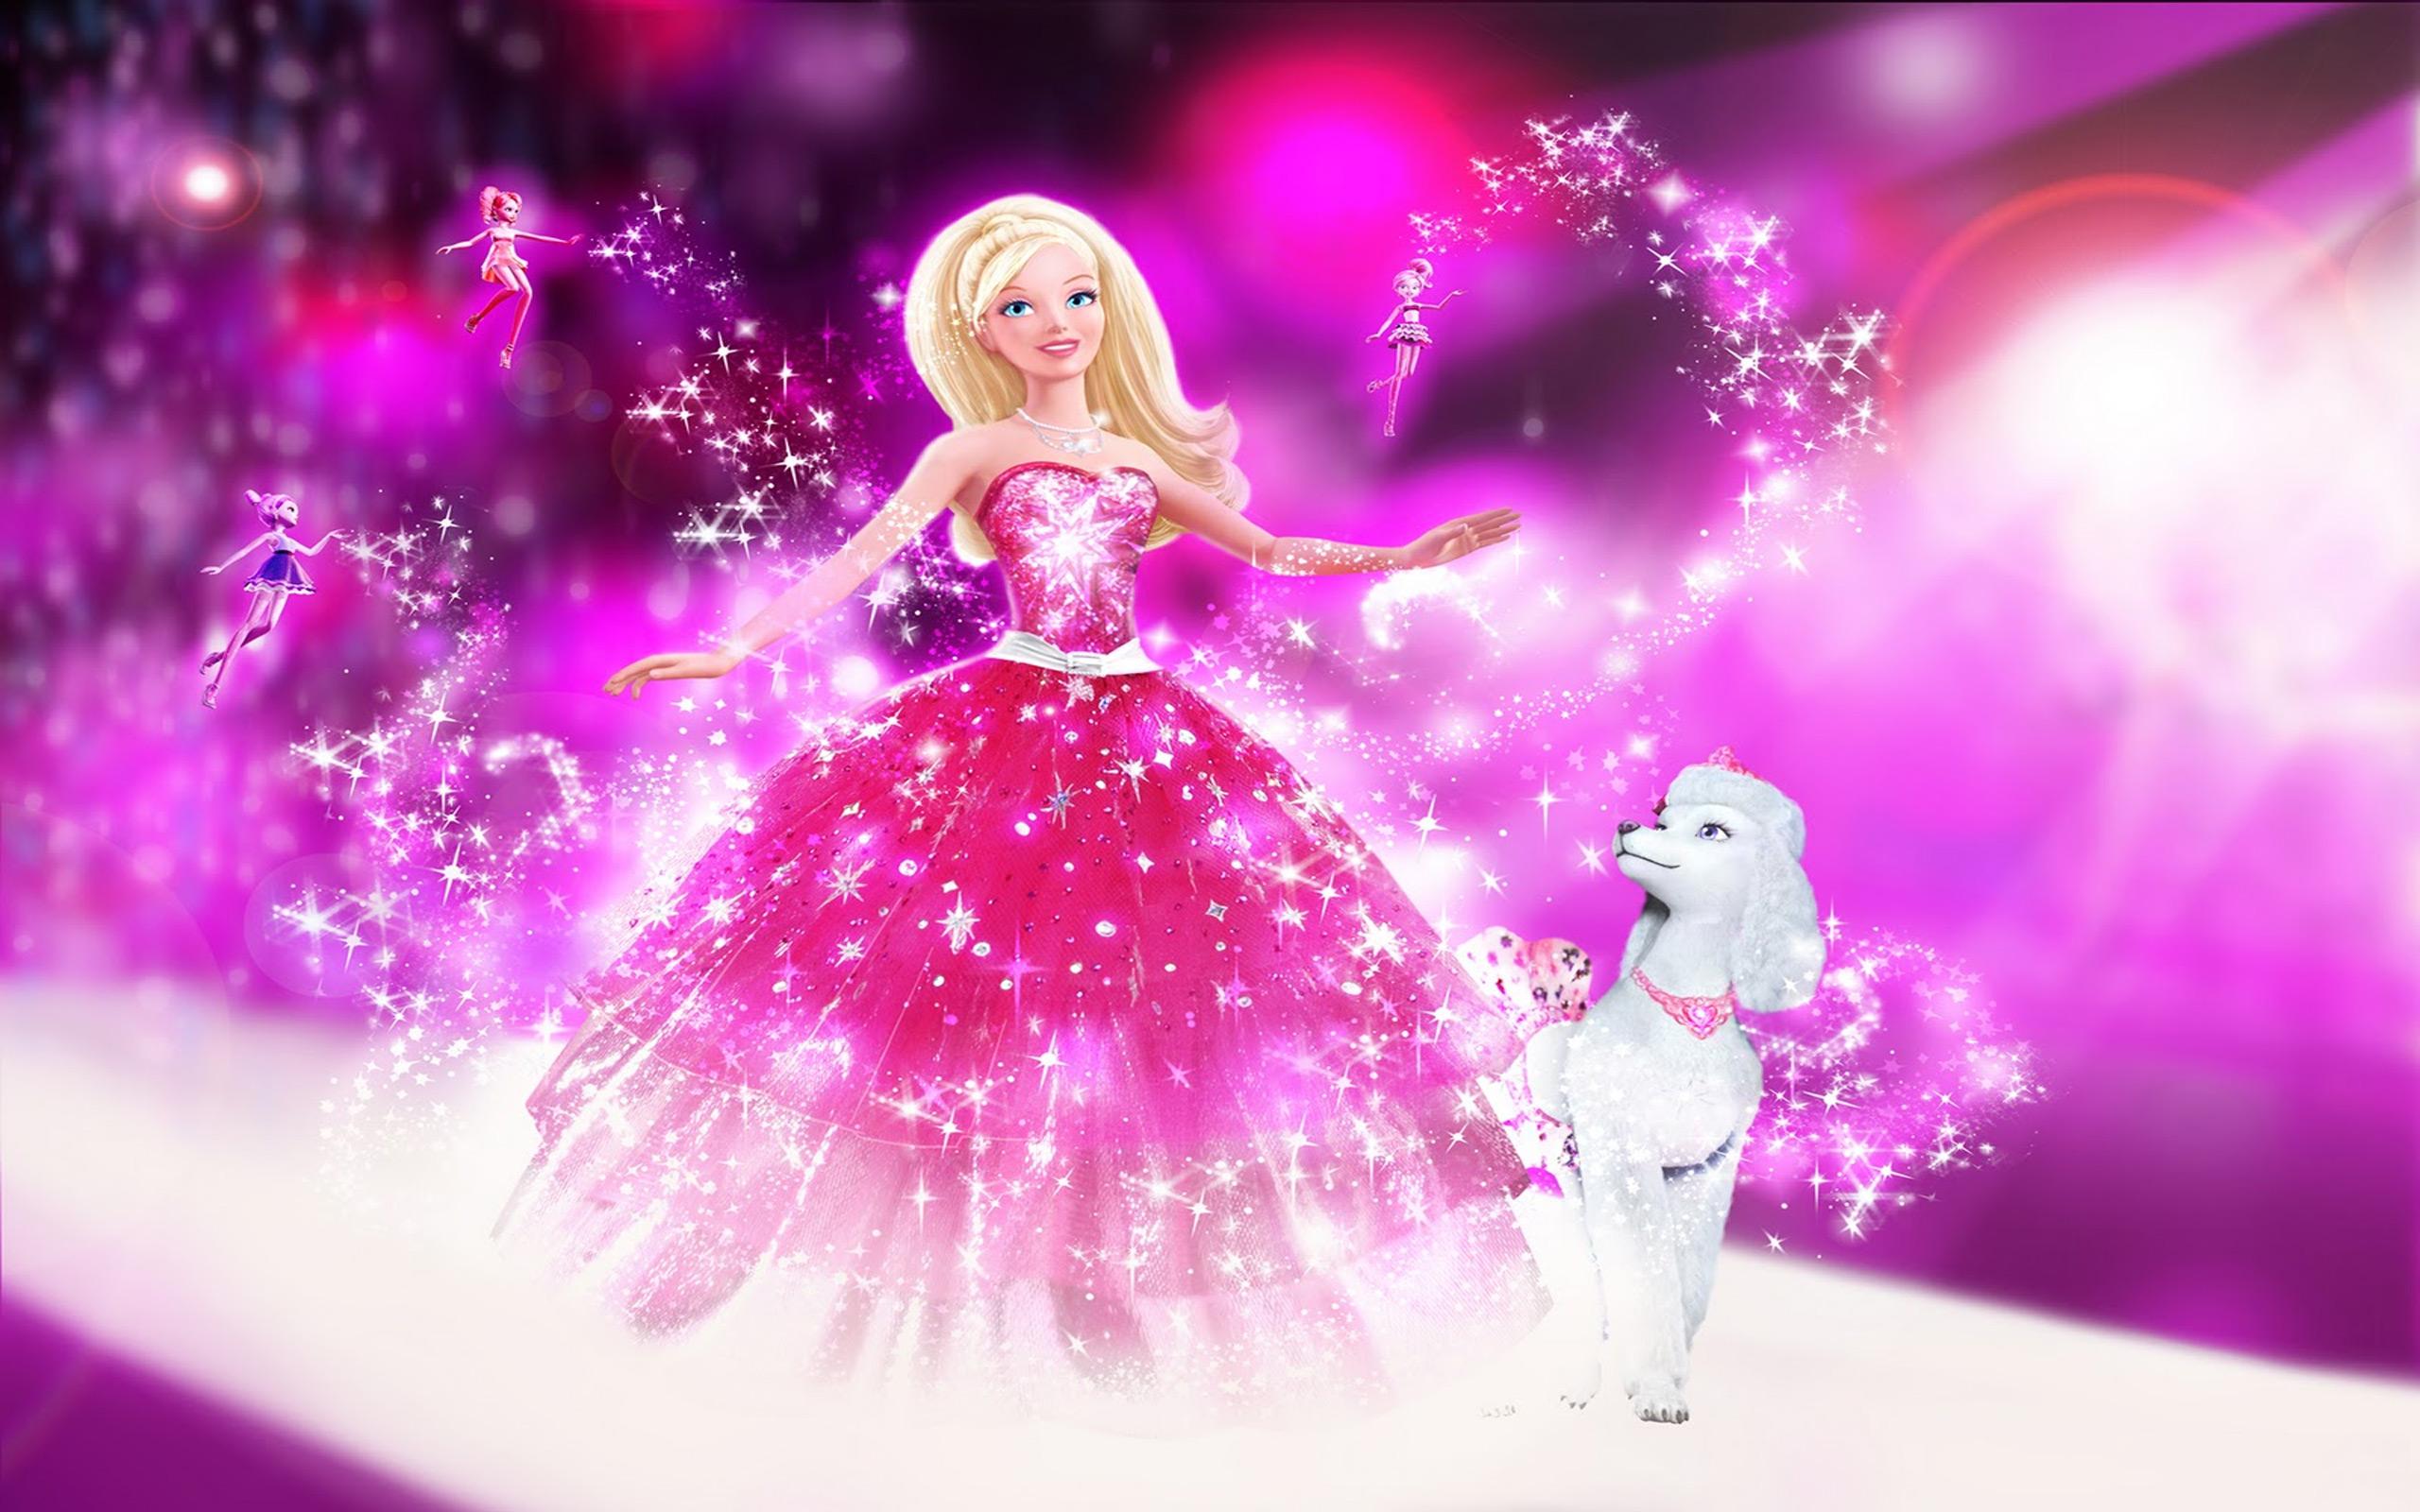 Barbiegirl. Барби Сказочная Страна моды феи. Куклы Барби Сказочная Страна моды. Барби: Сказочная Страна моды (2010).